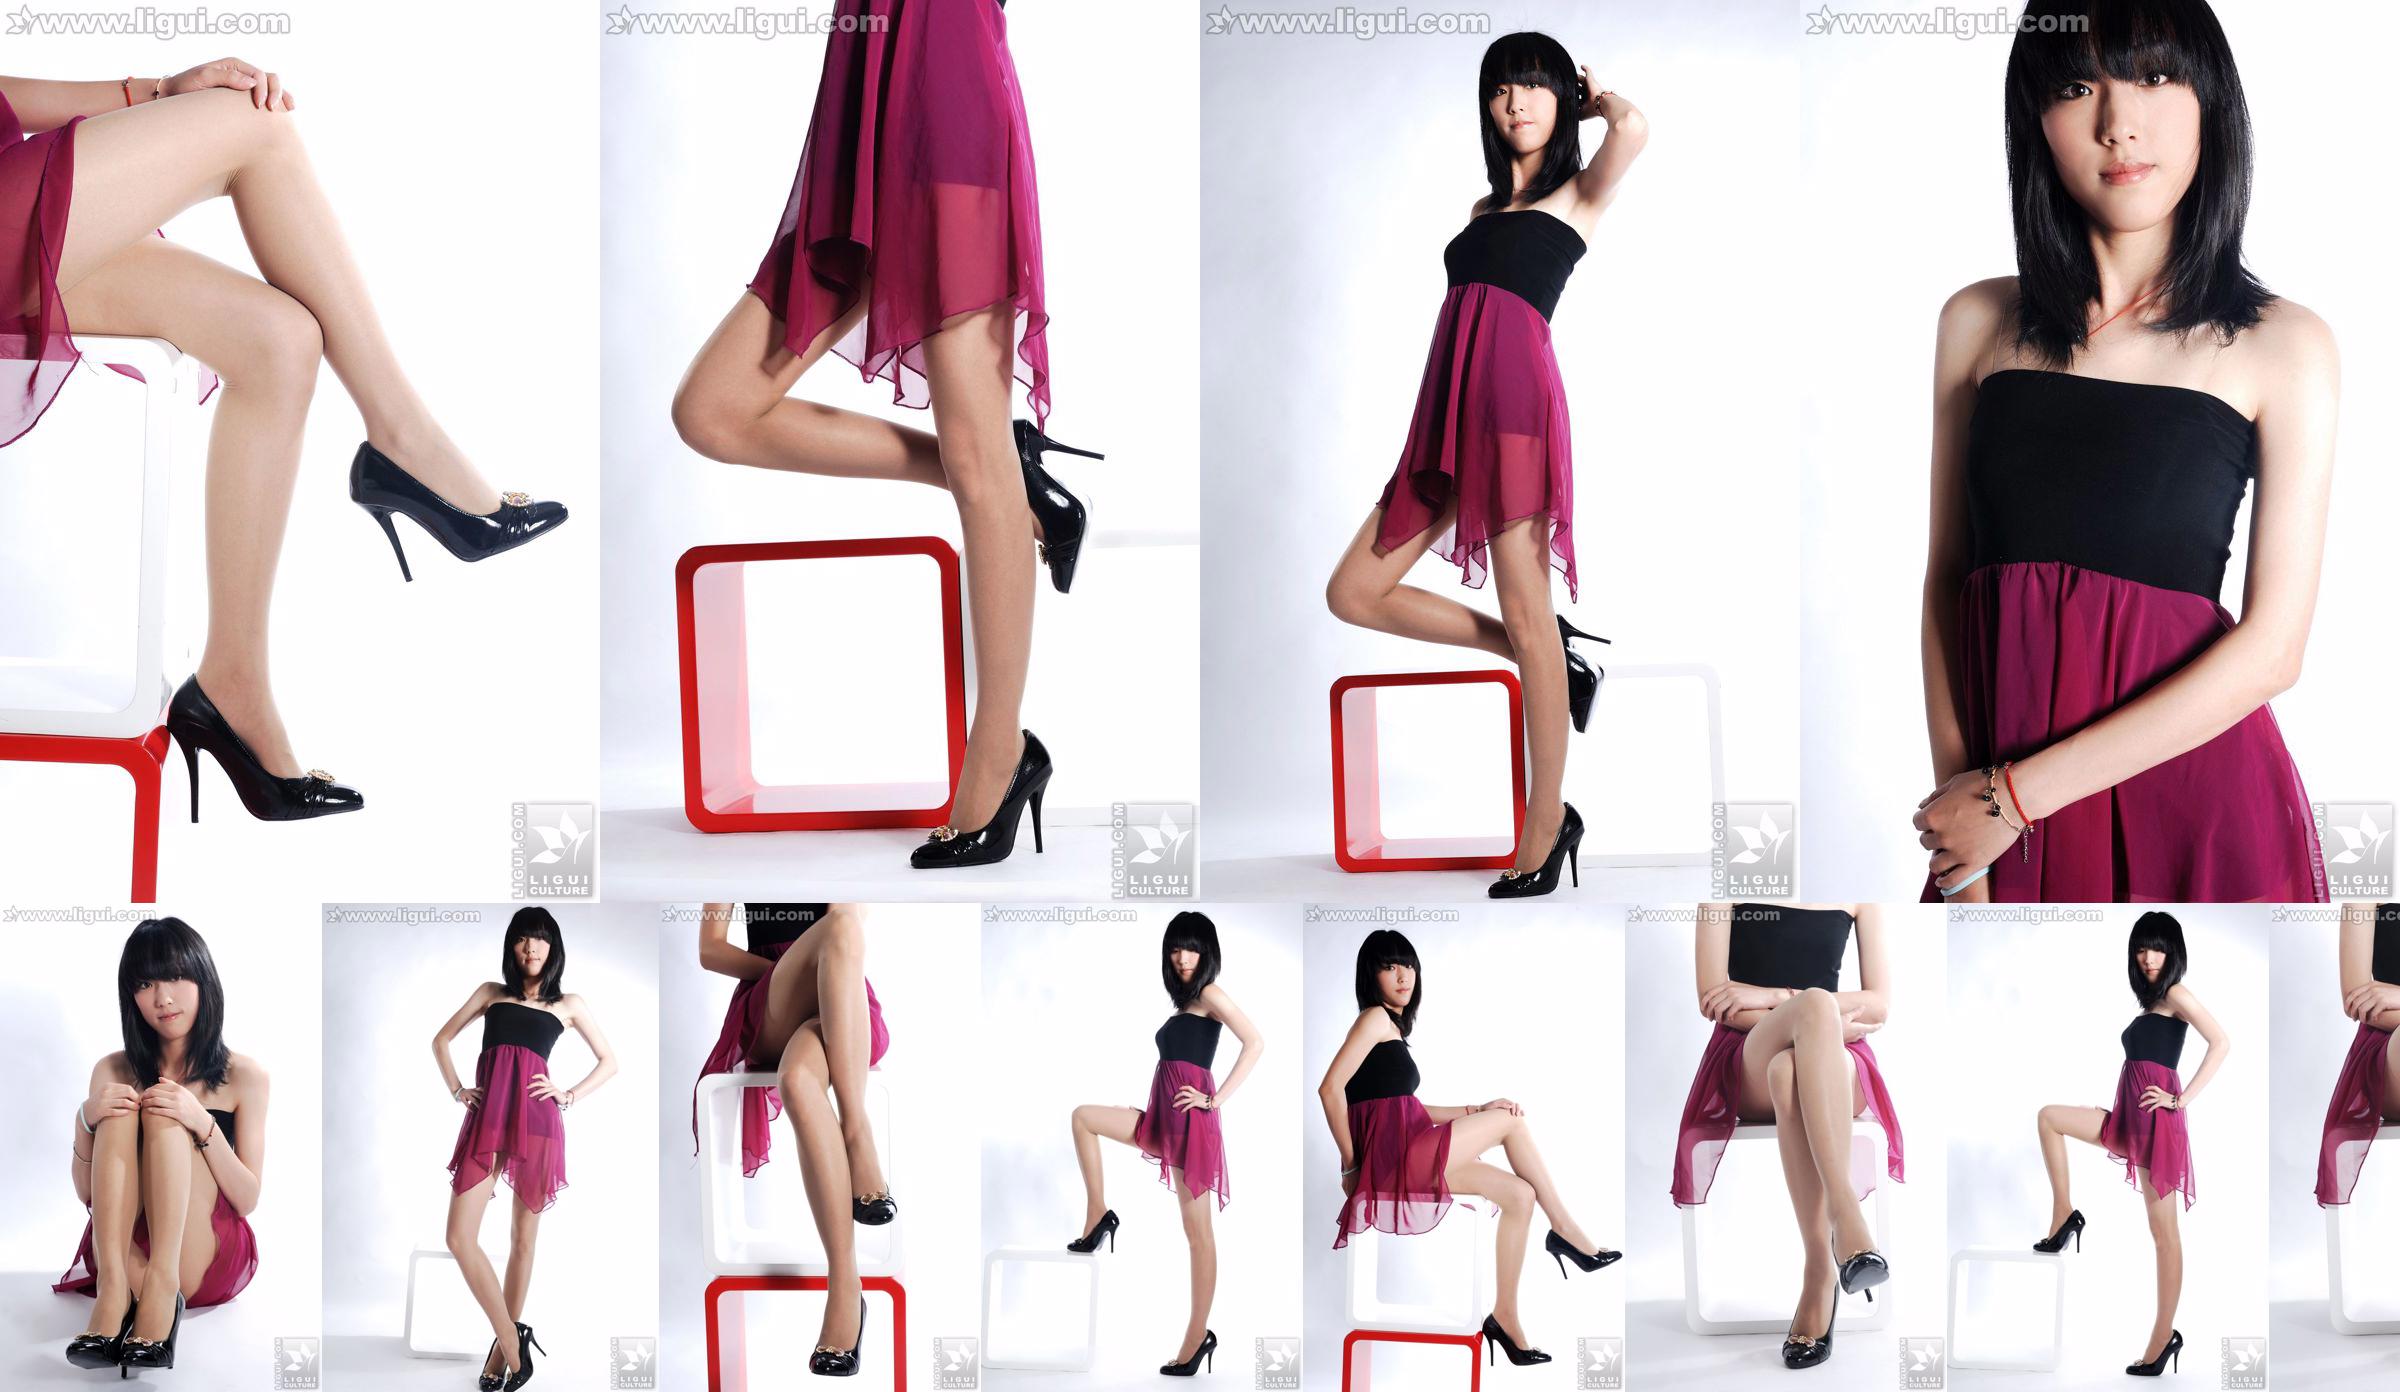 นางแบบ Lu Yingmei "Top Visual High-heeled Blockbuster" [丽柜 LiGui] ภาพถ่ายขาสวยและเท้าหยก No.1885ed หน้า 2